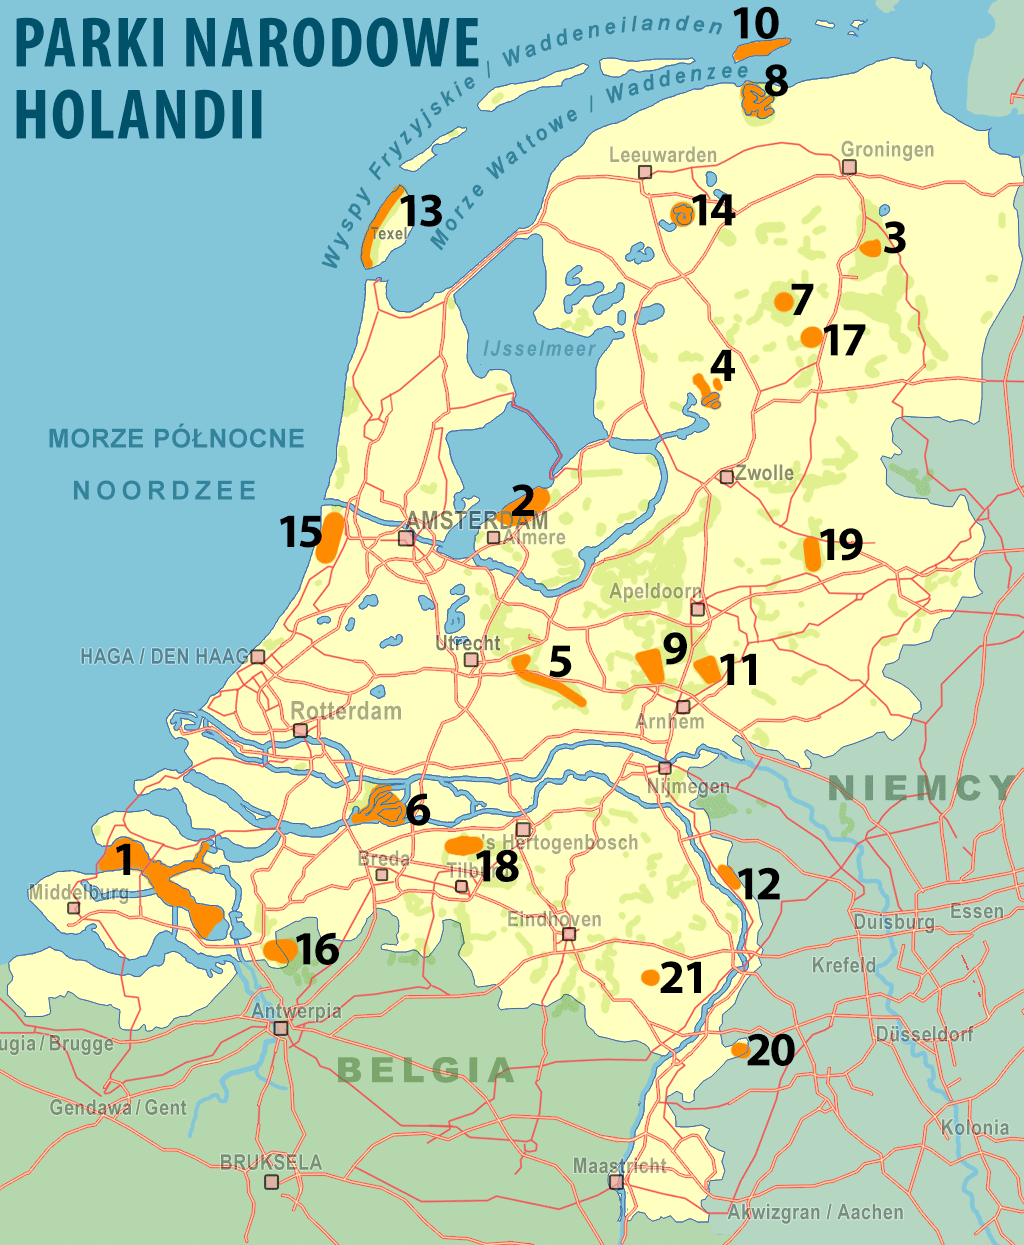 Parki narodowe Holandii